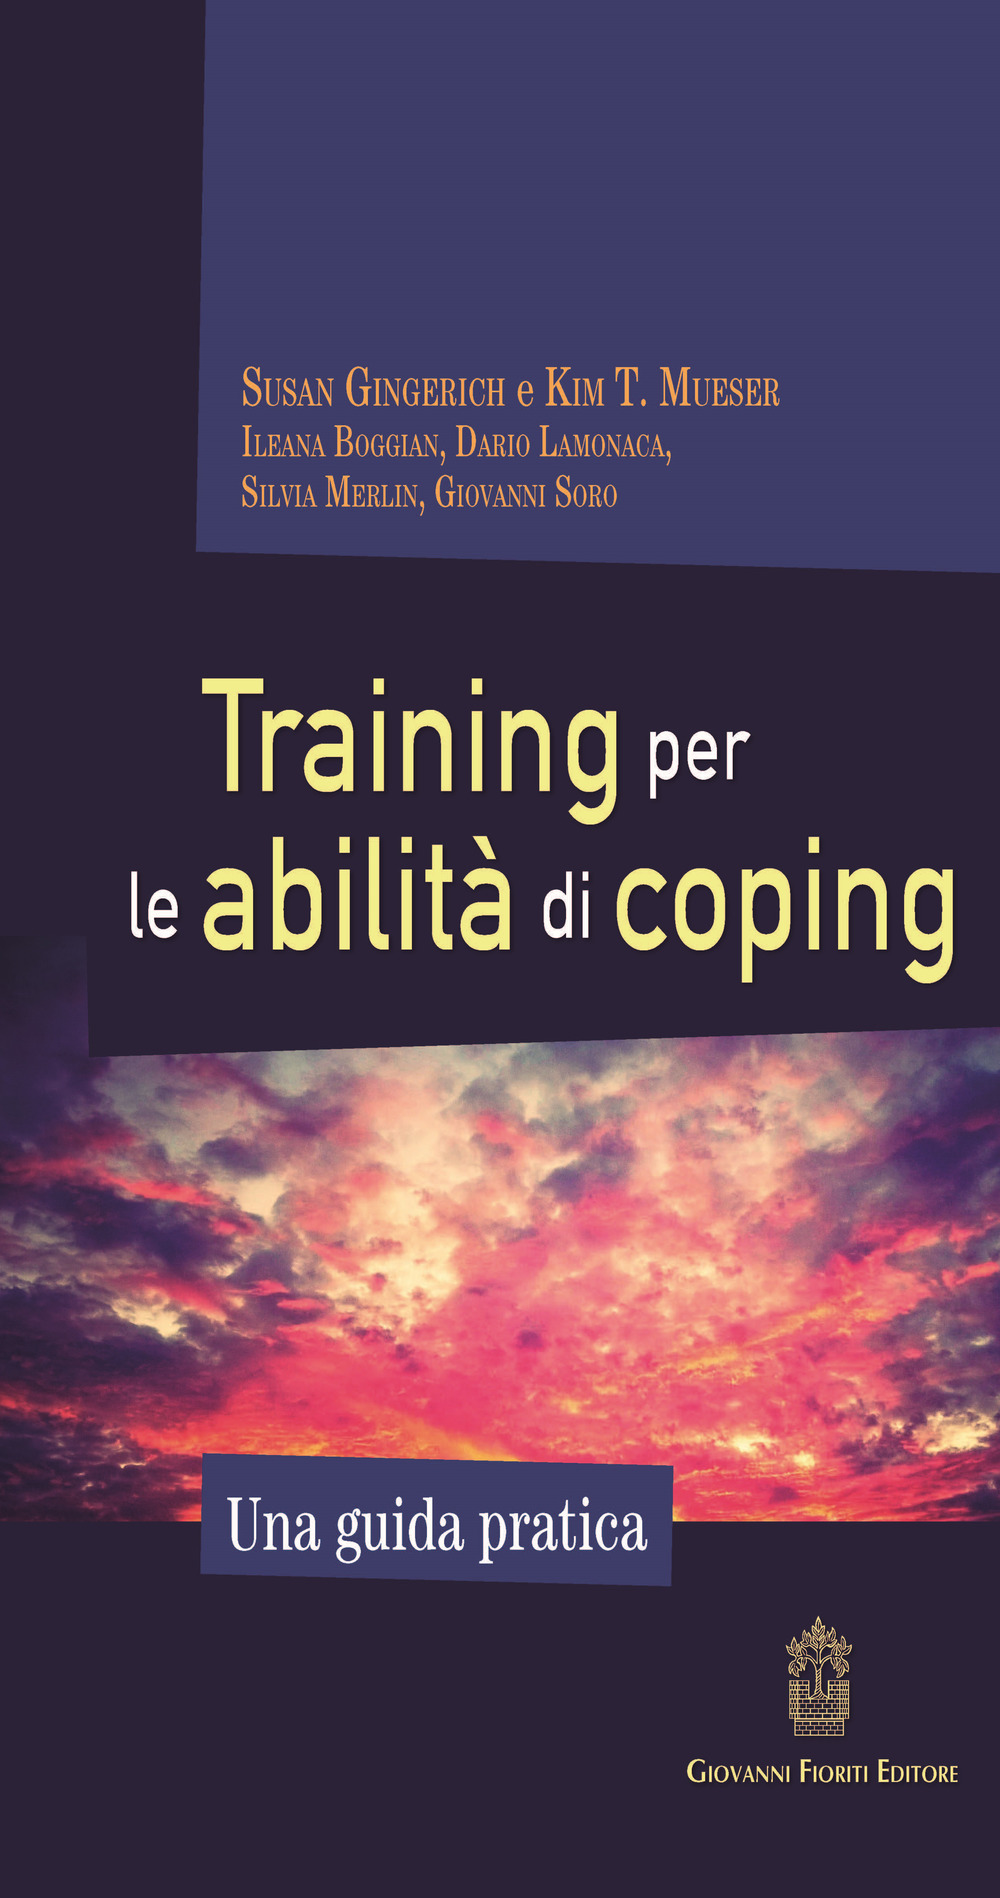 Libri Susan Gingerich / Mueser Kim T. - Training Per Le Abilita Di Coping. Una Guida Pratica NUOVO SIGILLATO, EDIZIONE DEL 20/04/2019 SUBITO DISPONIBILE